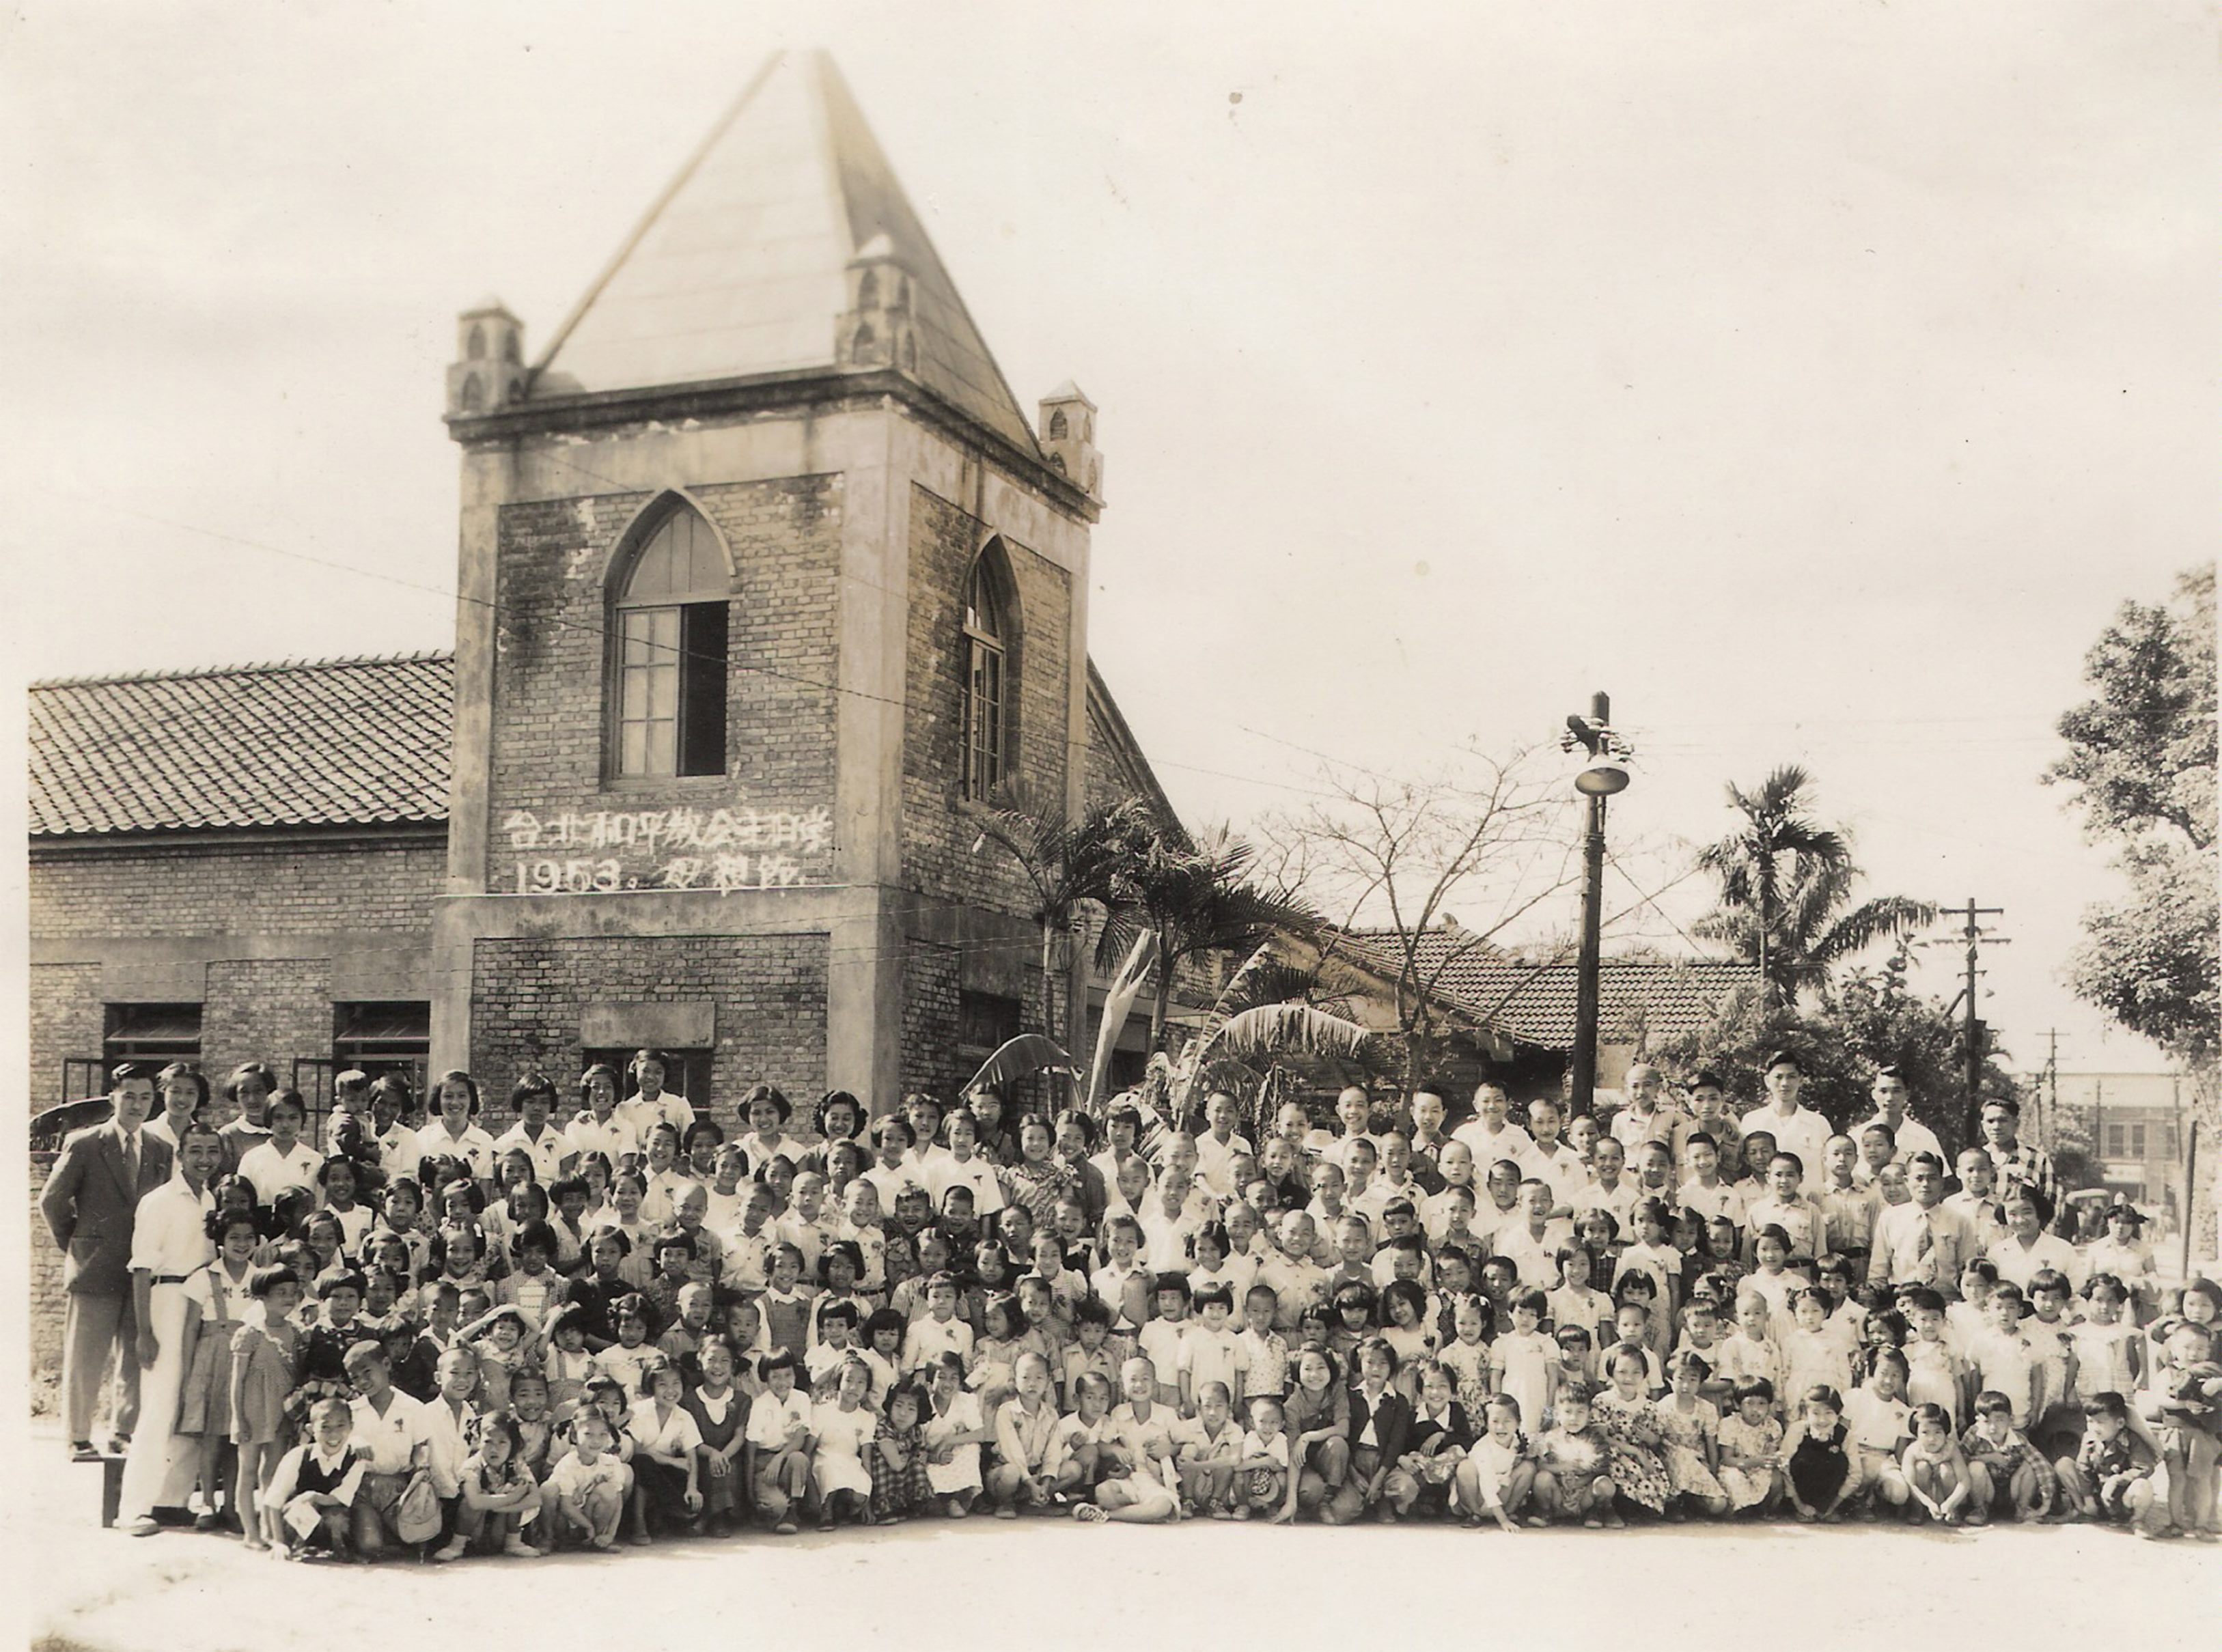 和平基督教會舊外觀(1953年)